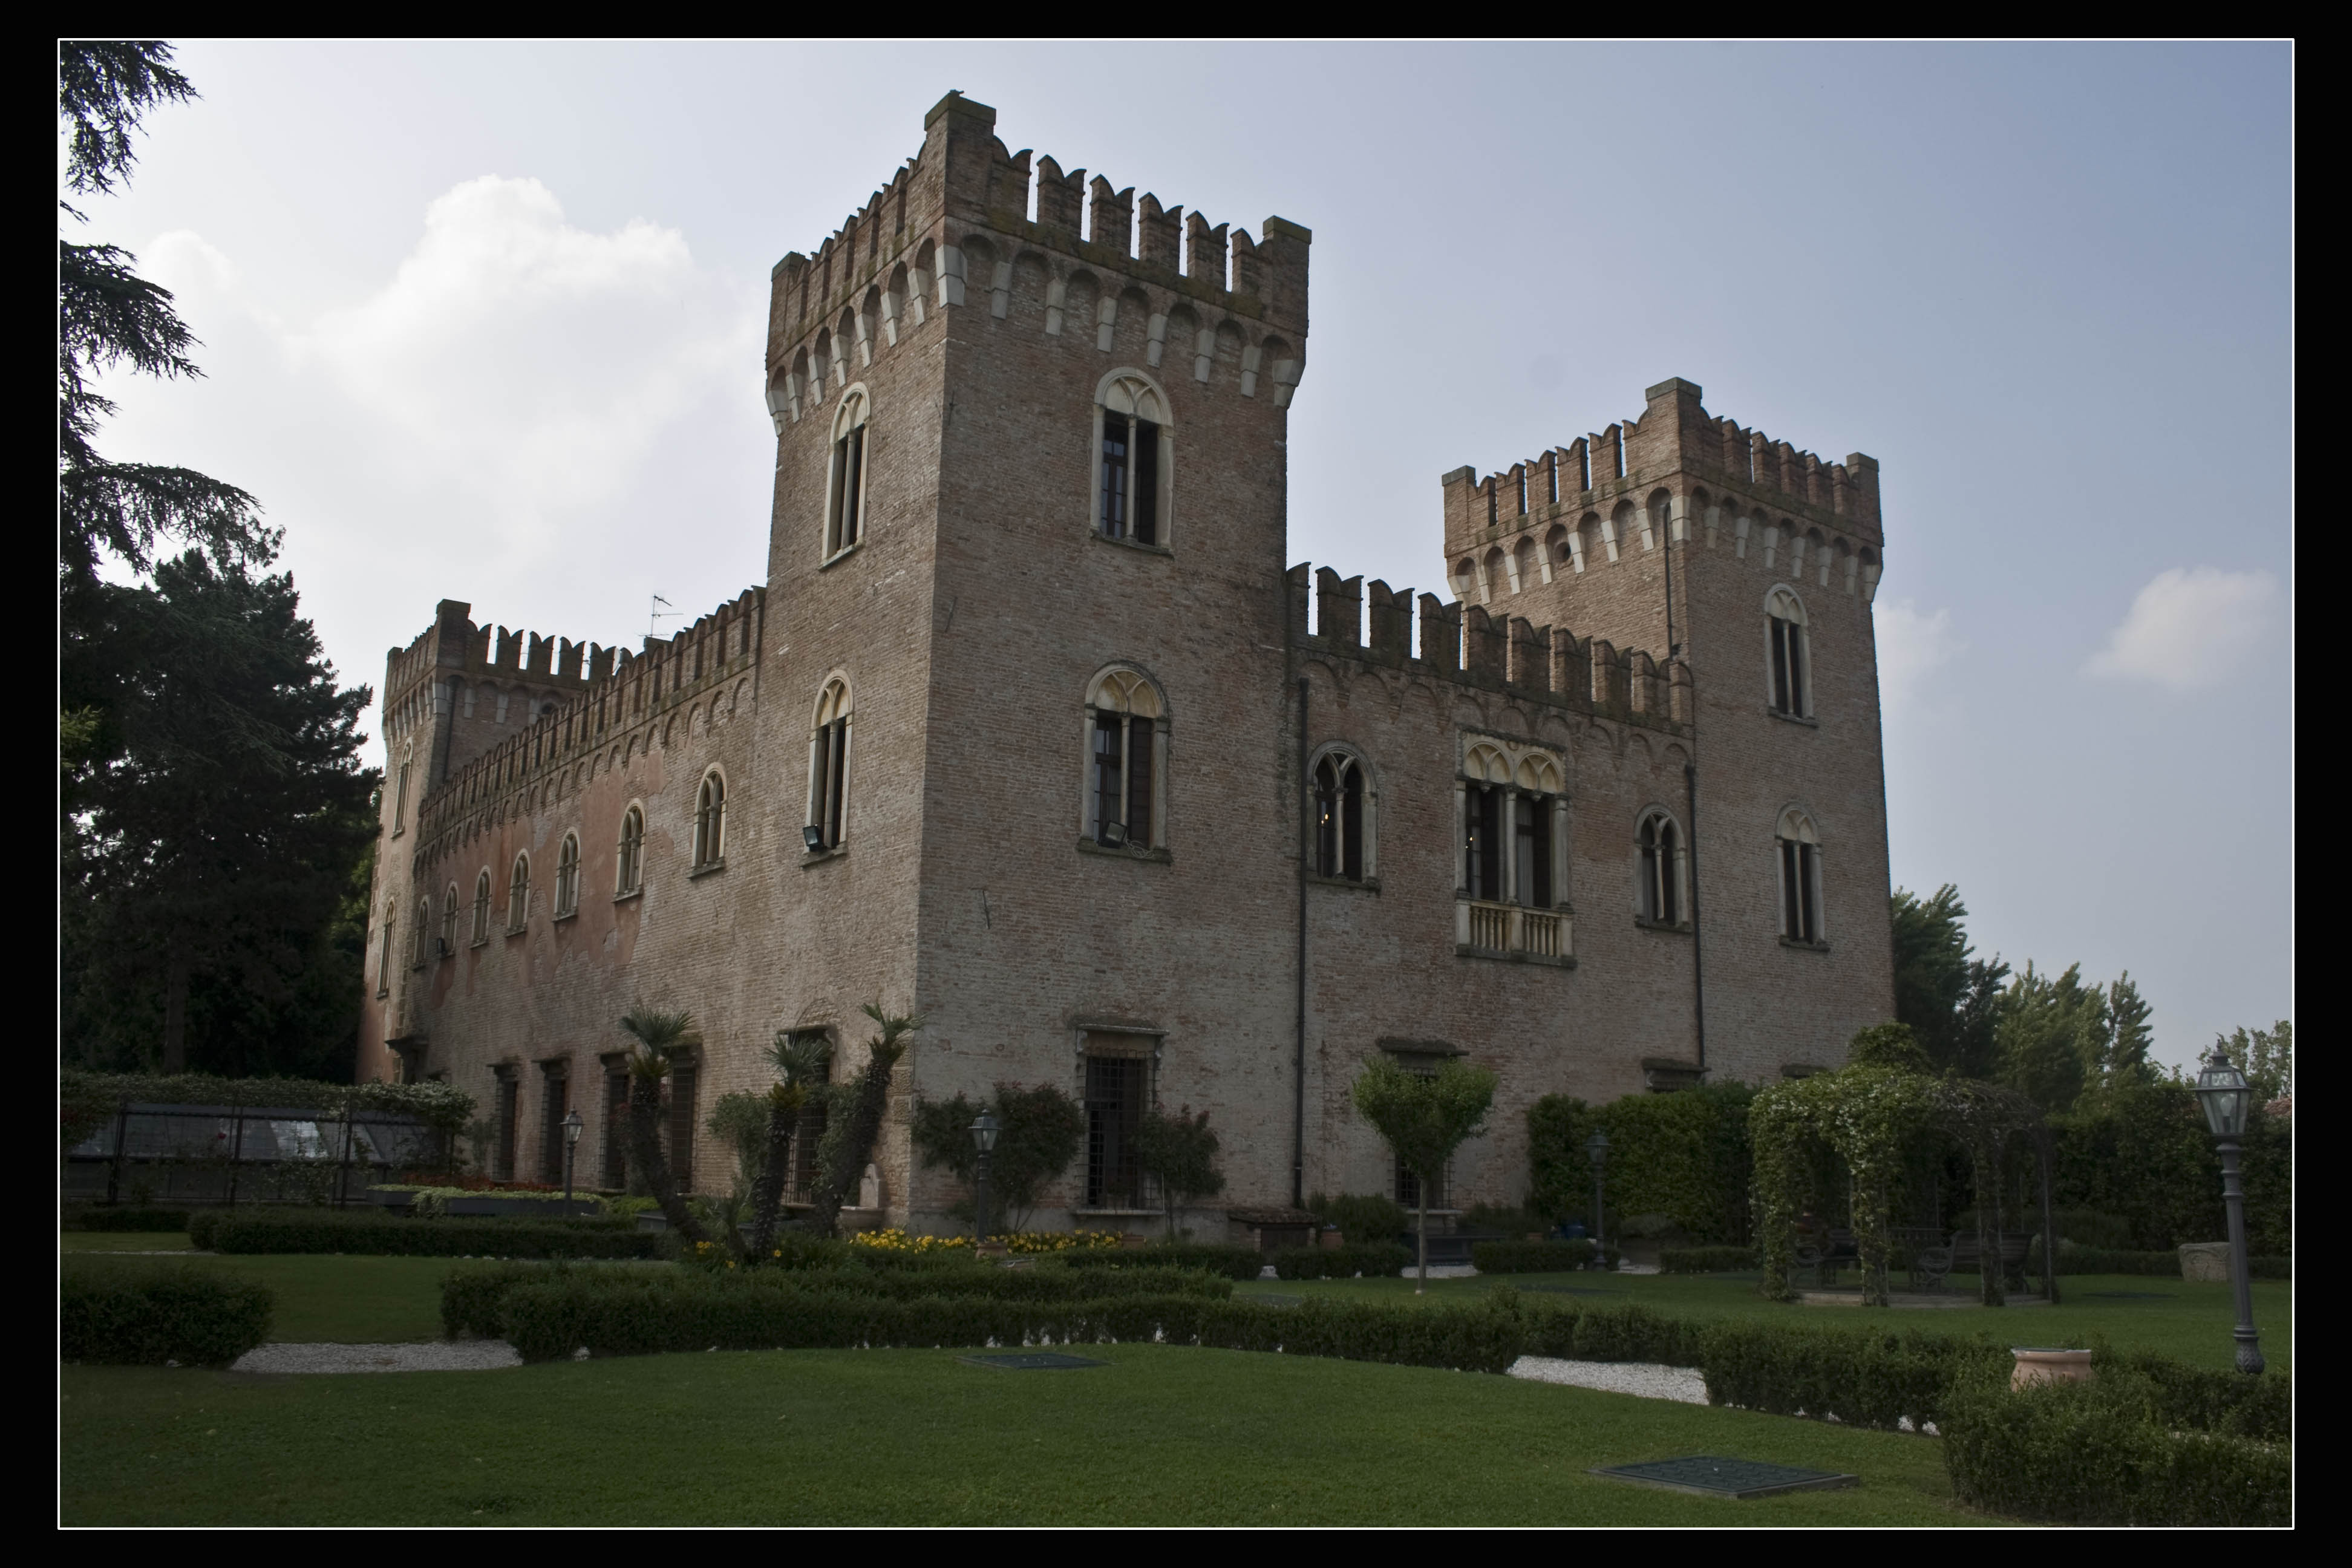 Bevilacqua (Vr) Castello Bevilacqua Il castello di Bevilacqua in provincia di Verona